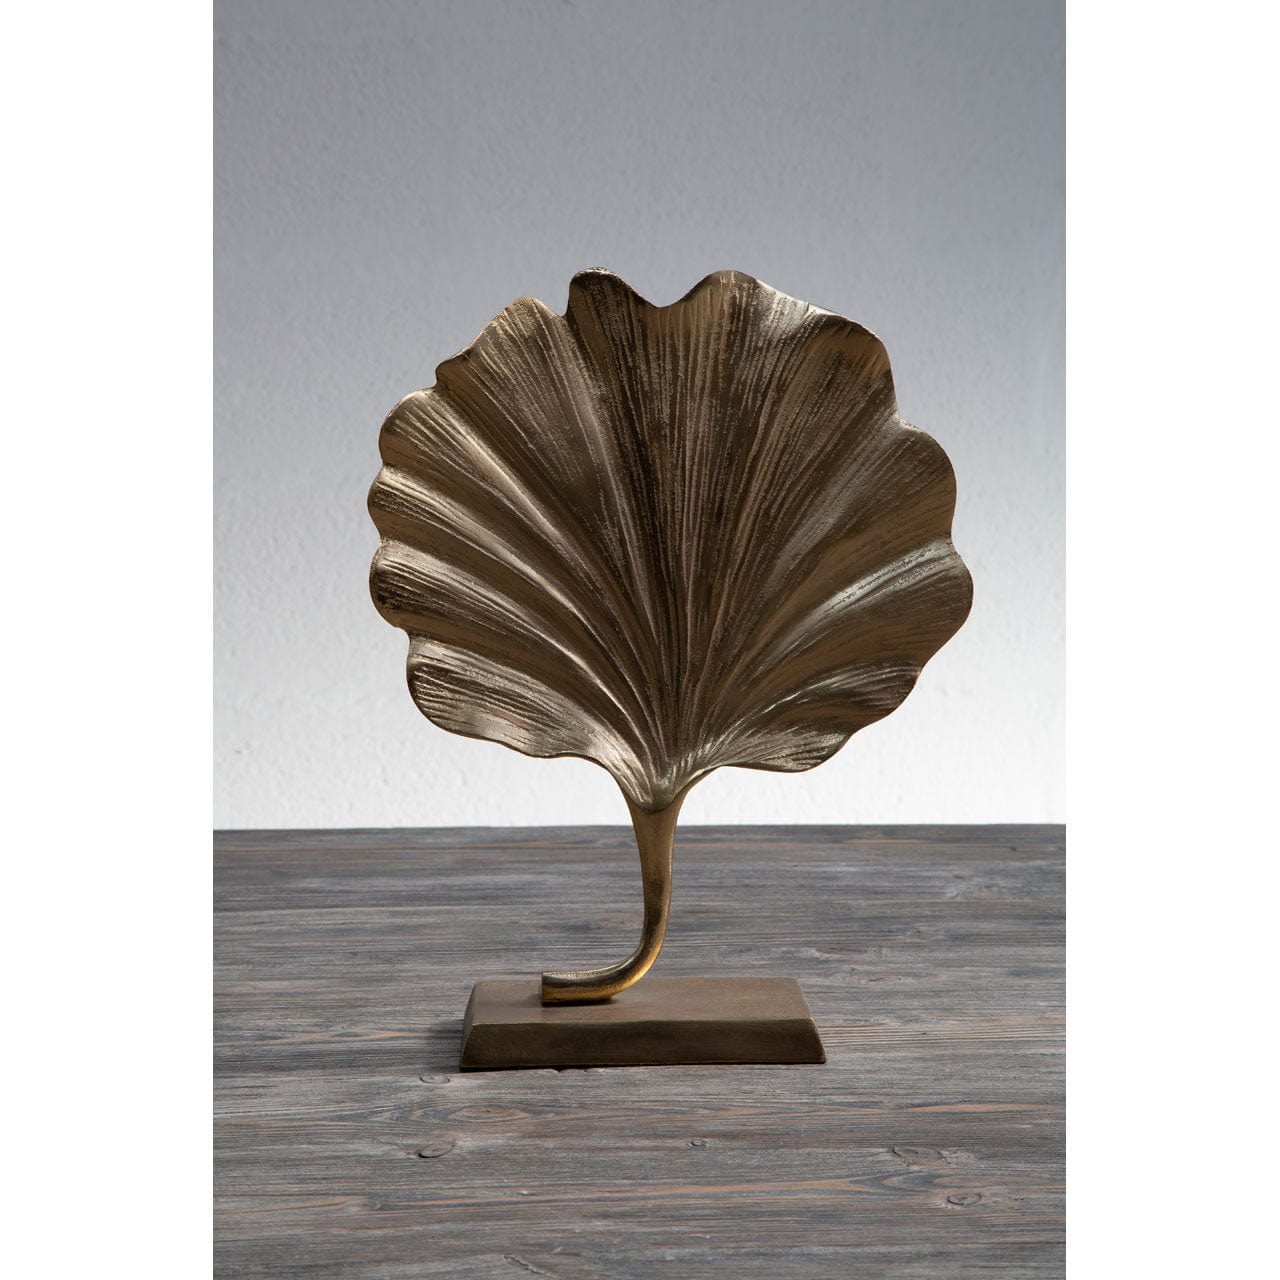 Hamilton Interiors Accessories Prato Leaf Sculpture House of Isabella UK